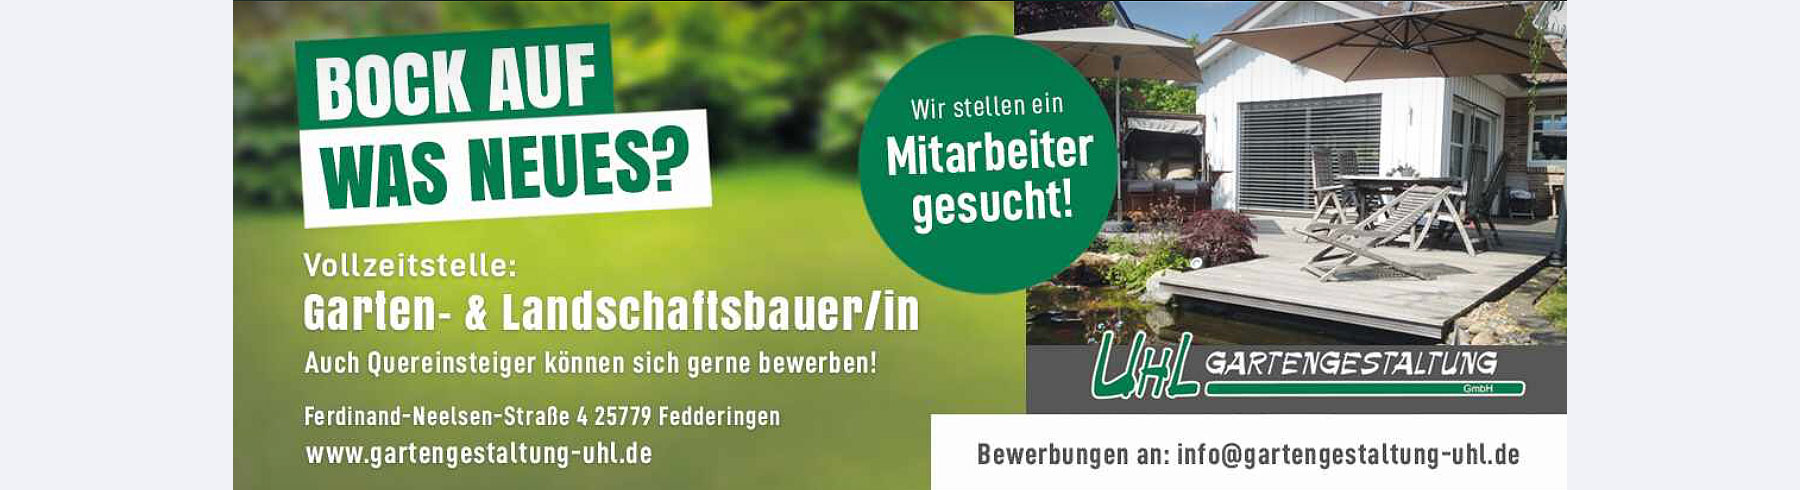 Uhl Gartengestaltung GmbH